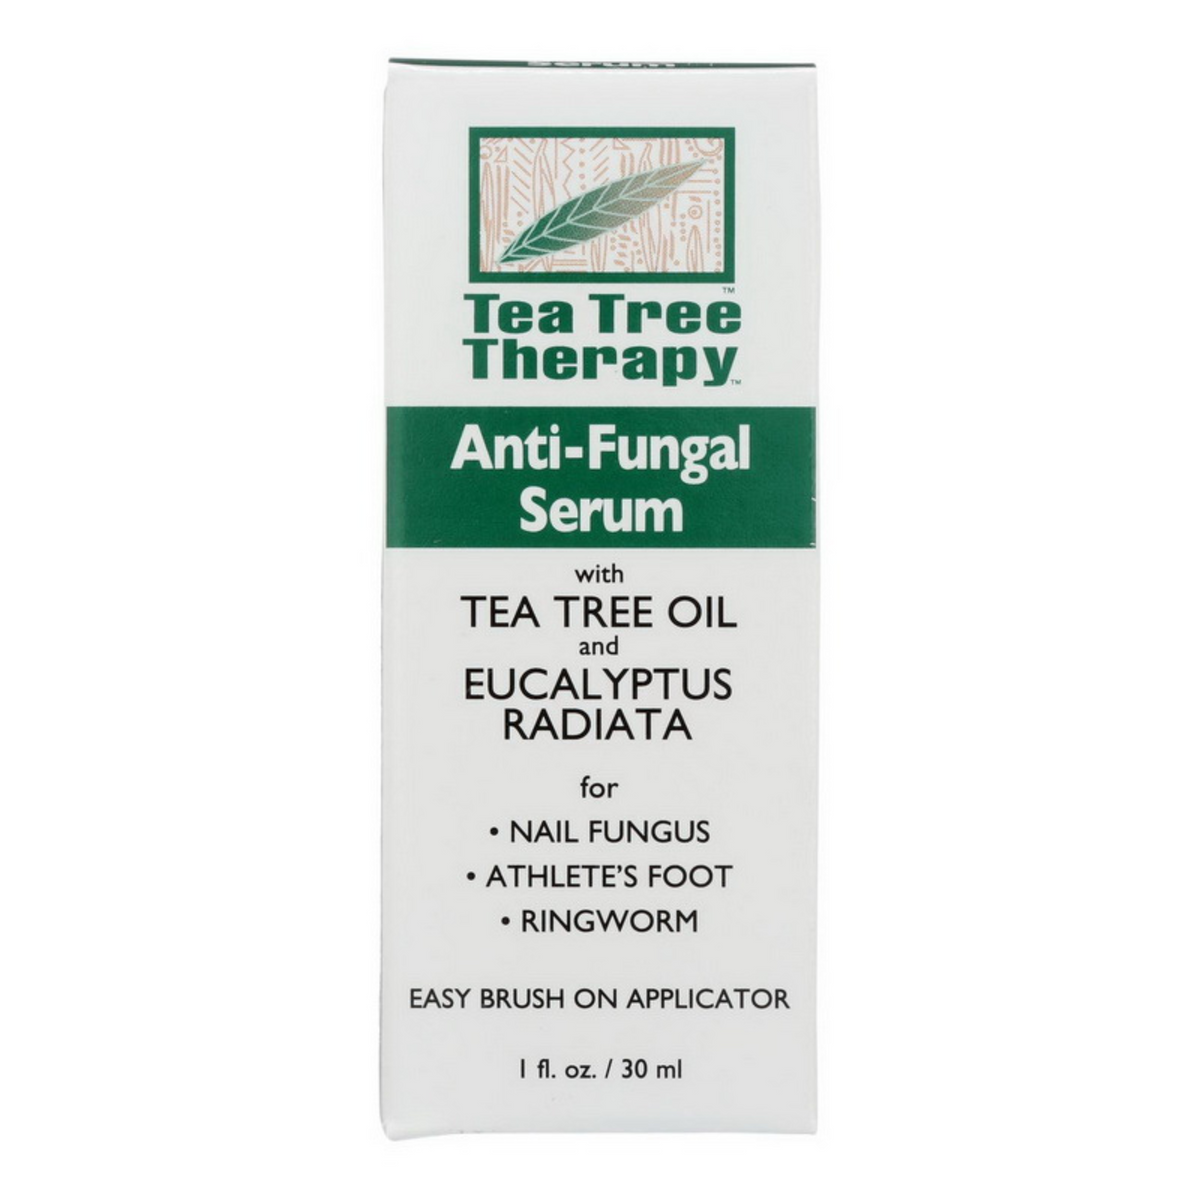 Primary Image of Tea Tree Therapy Anti-Fungal Serum